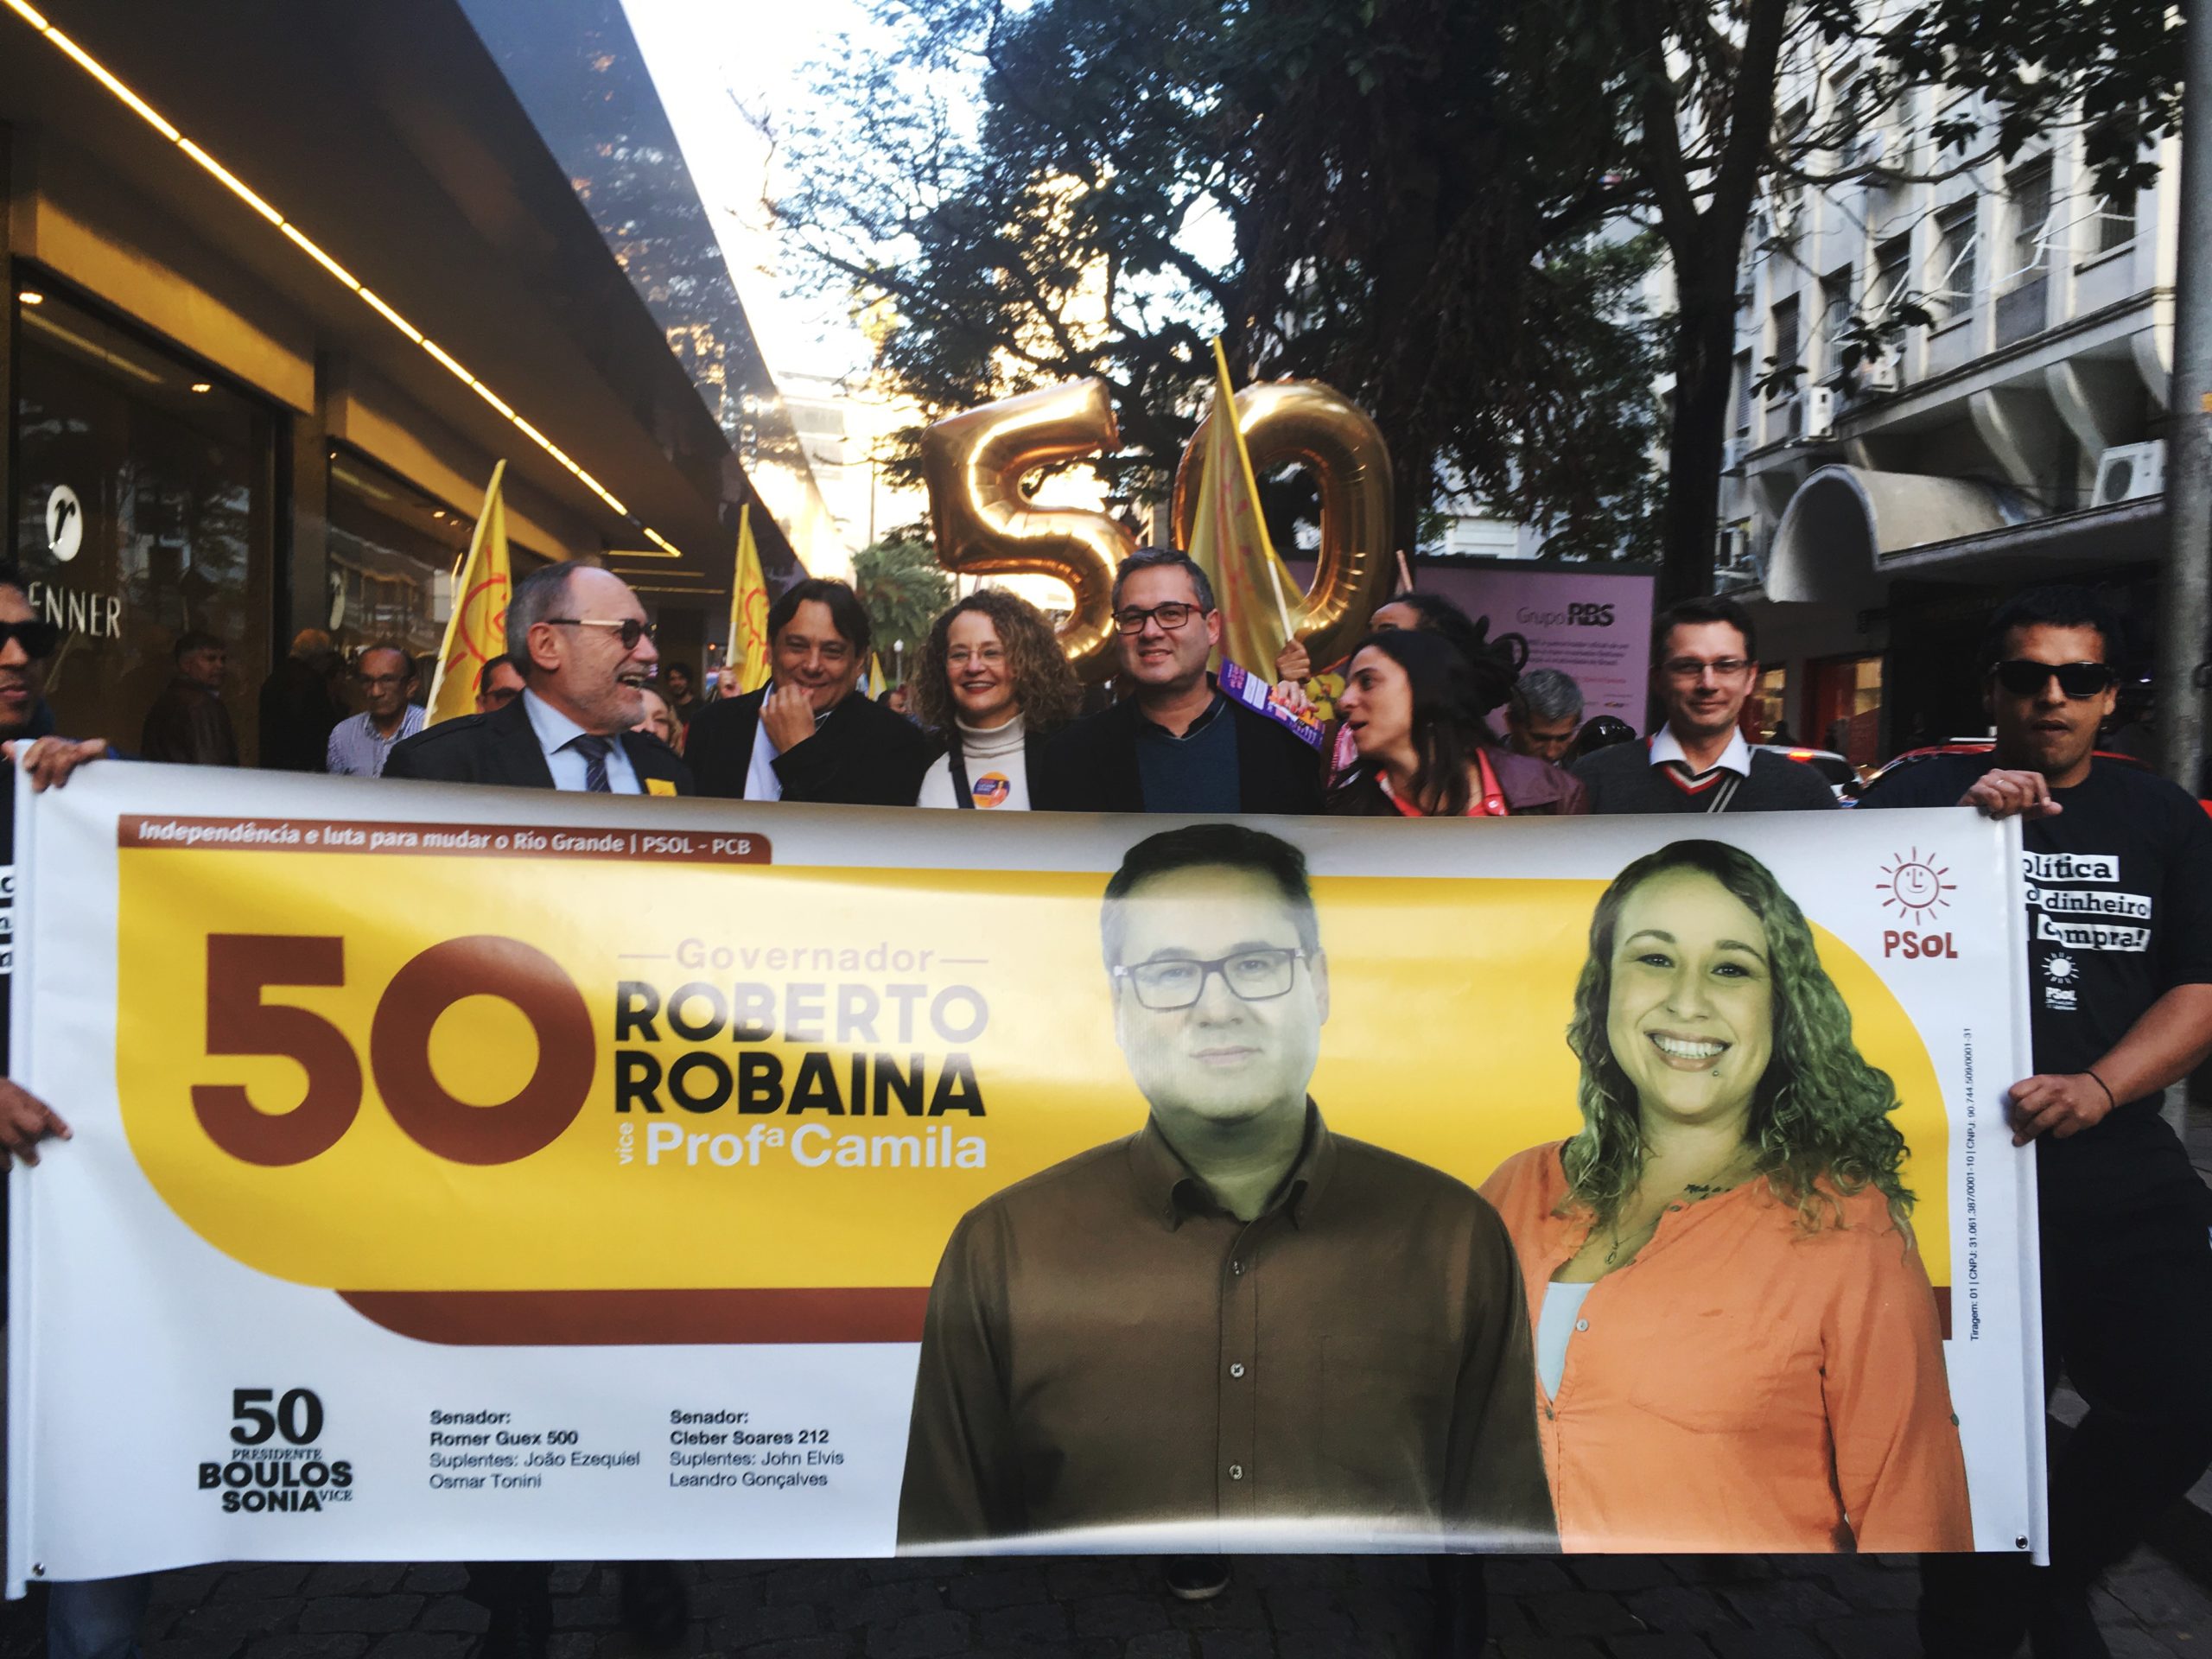 Robaina e candidatos da coligação PSOL-PCB dão início à campanha nas ruas